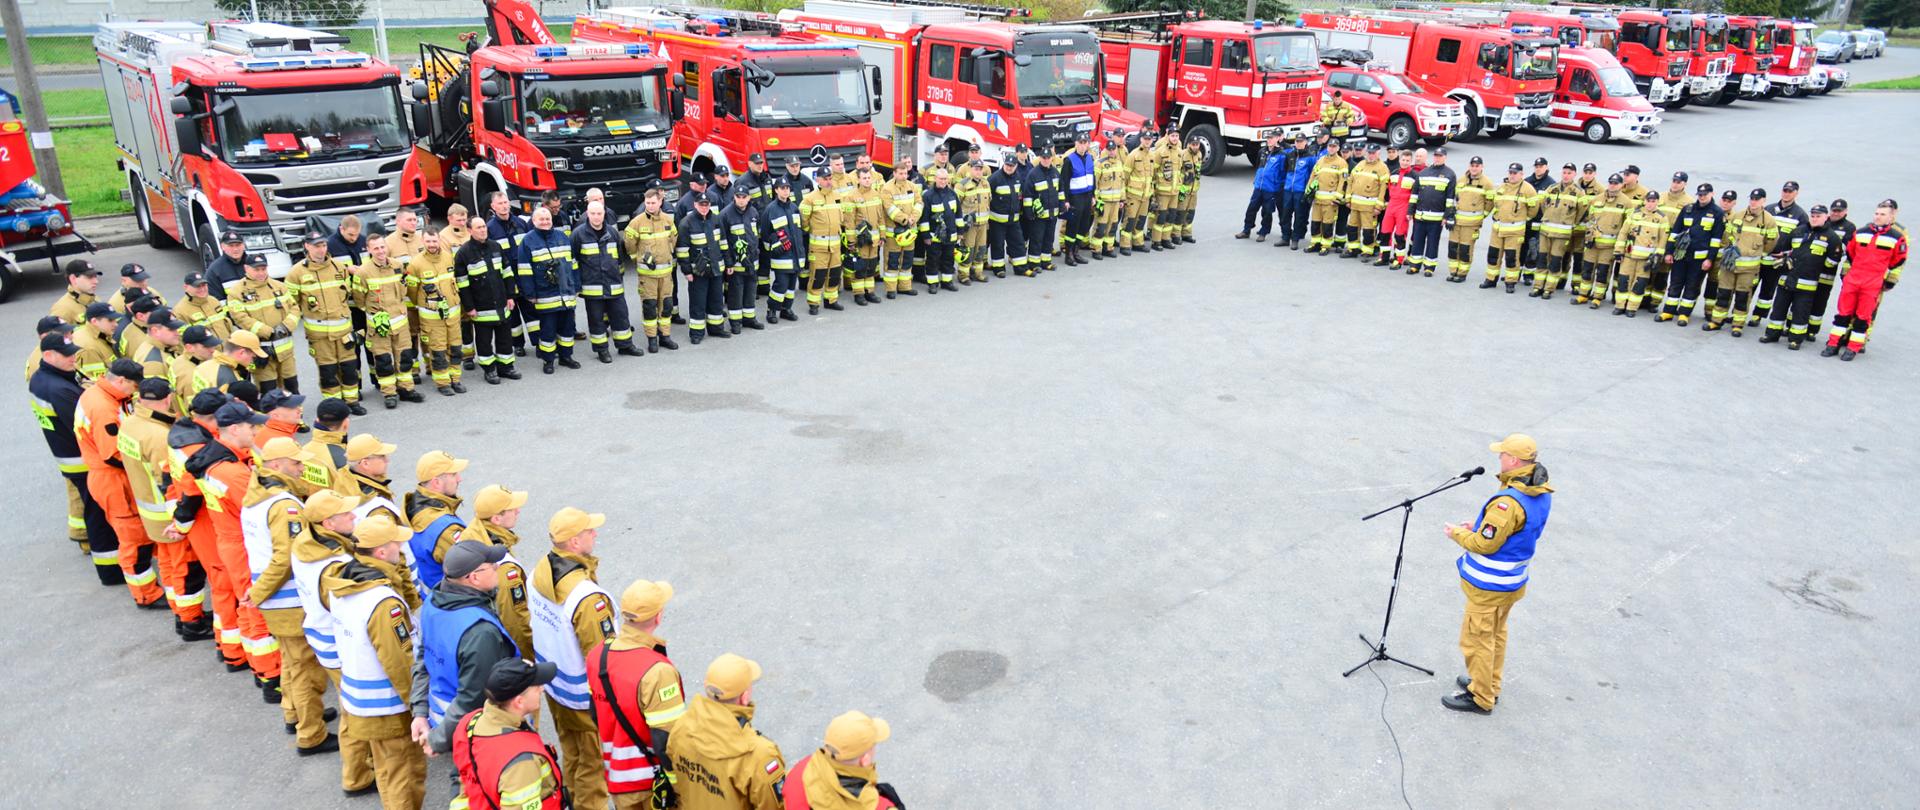 Na zdjęciu widać strażaków podczas odprawy przed ćwiczeniami. Strażacy stoją w układzie litery U. Ubrani są w ubrania specjalne na środku kierownik ćwiczeń i przemawia do ratowników 